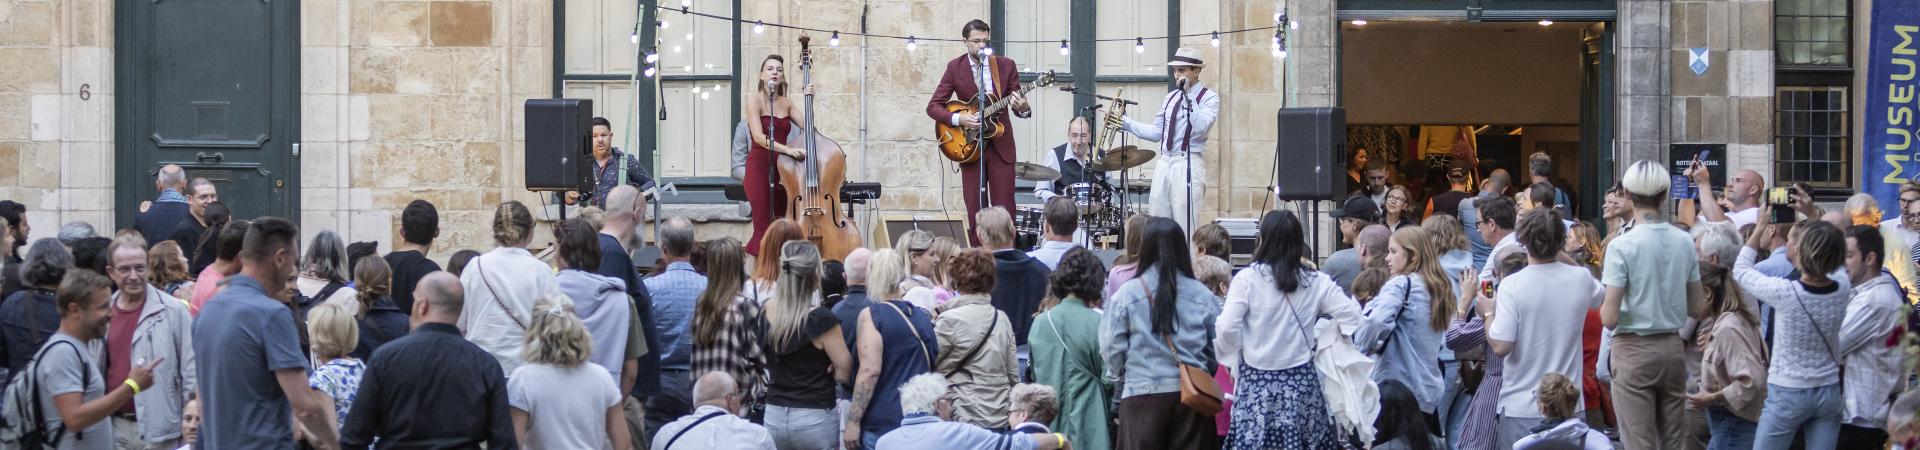 Sfeerbeeld publiek en muziekgroep op Conscienceplein tijdens Museumnacht 2022